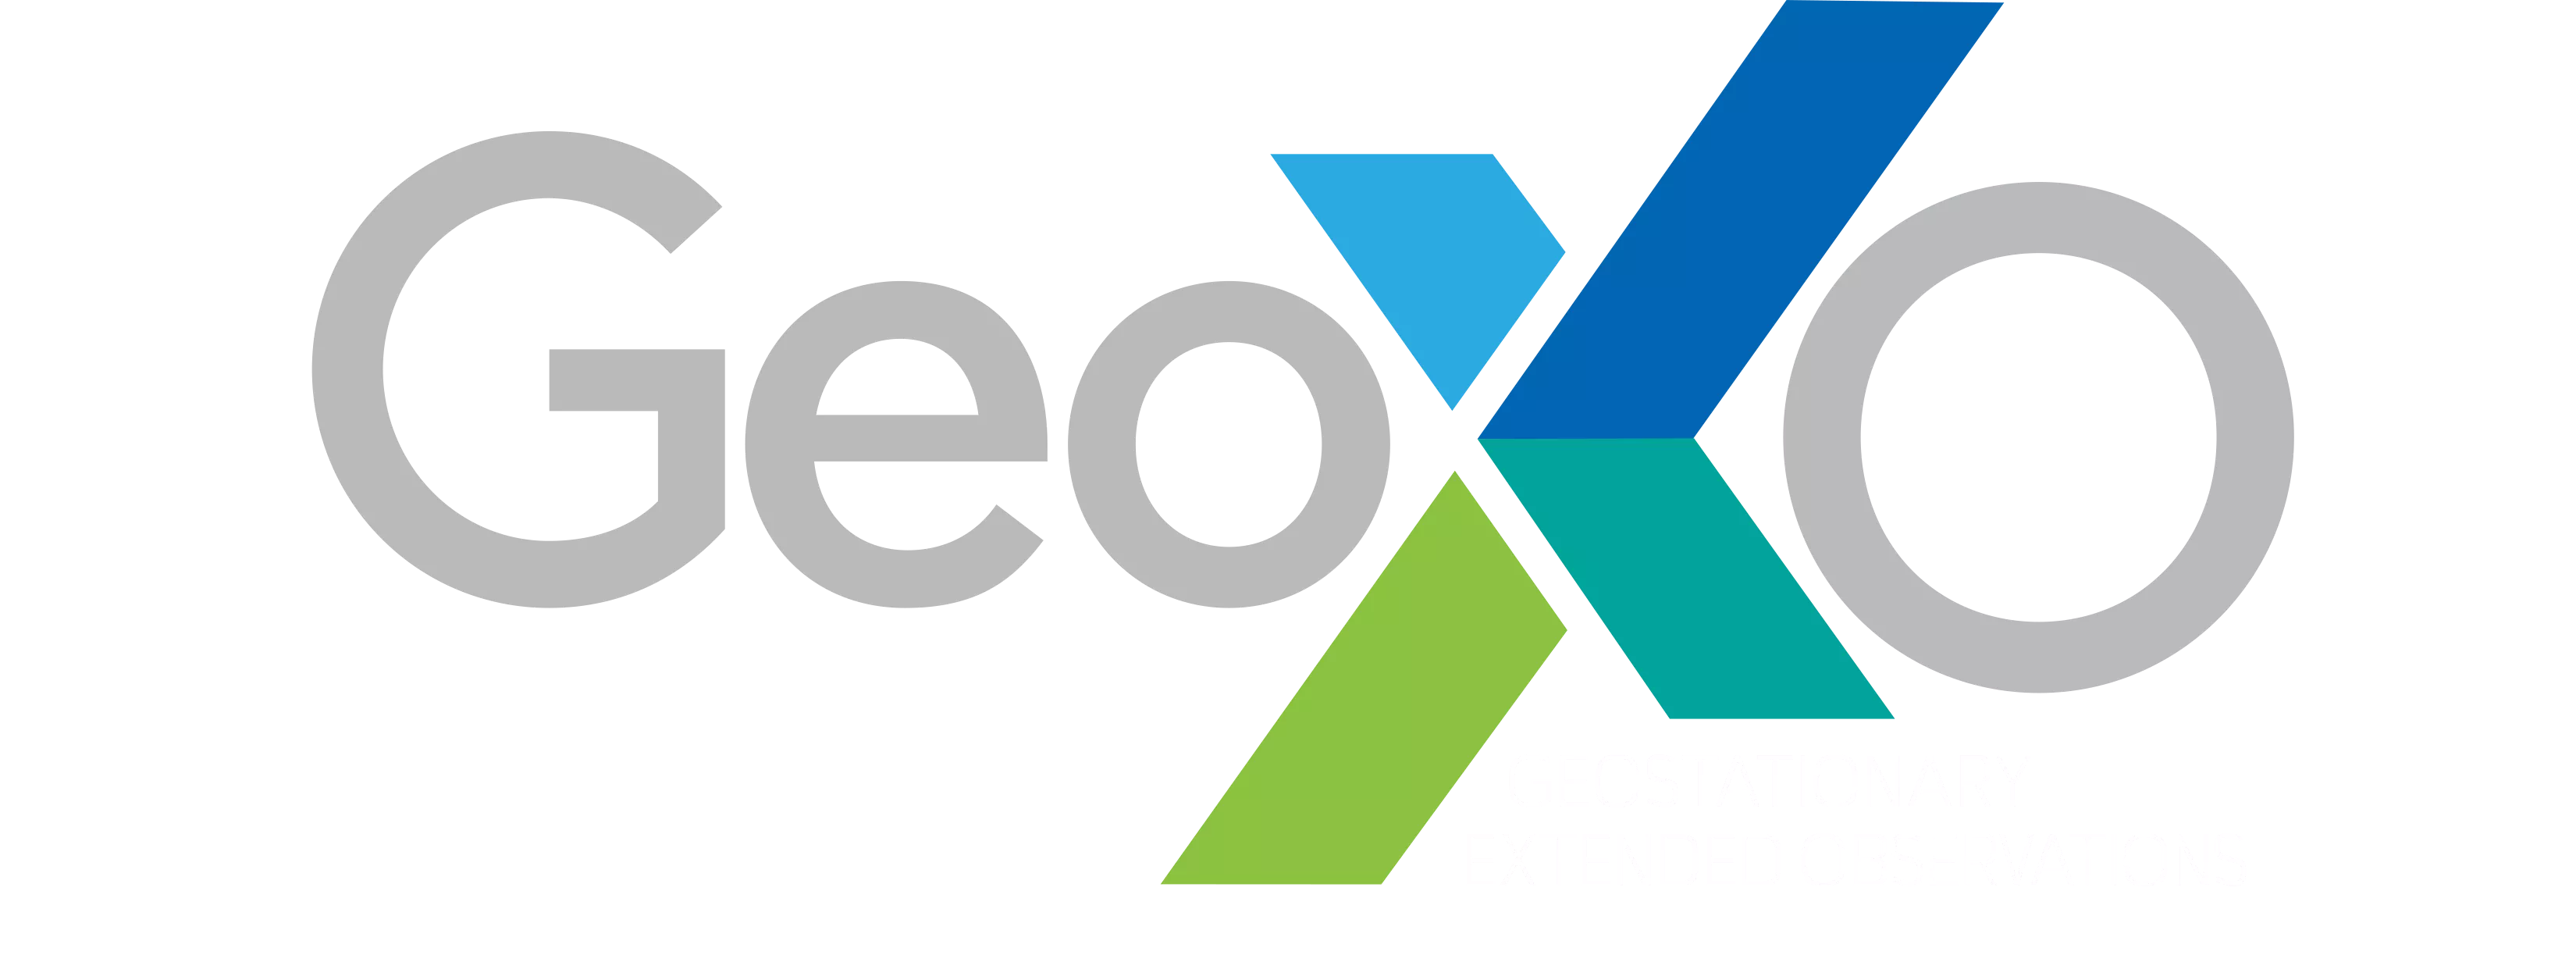 GeoXO_wordmark-Transparent.png 